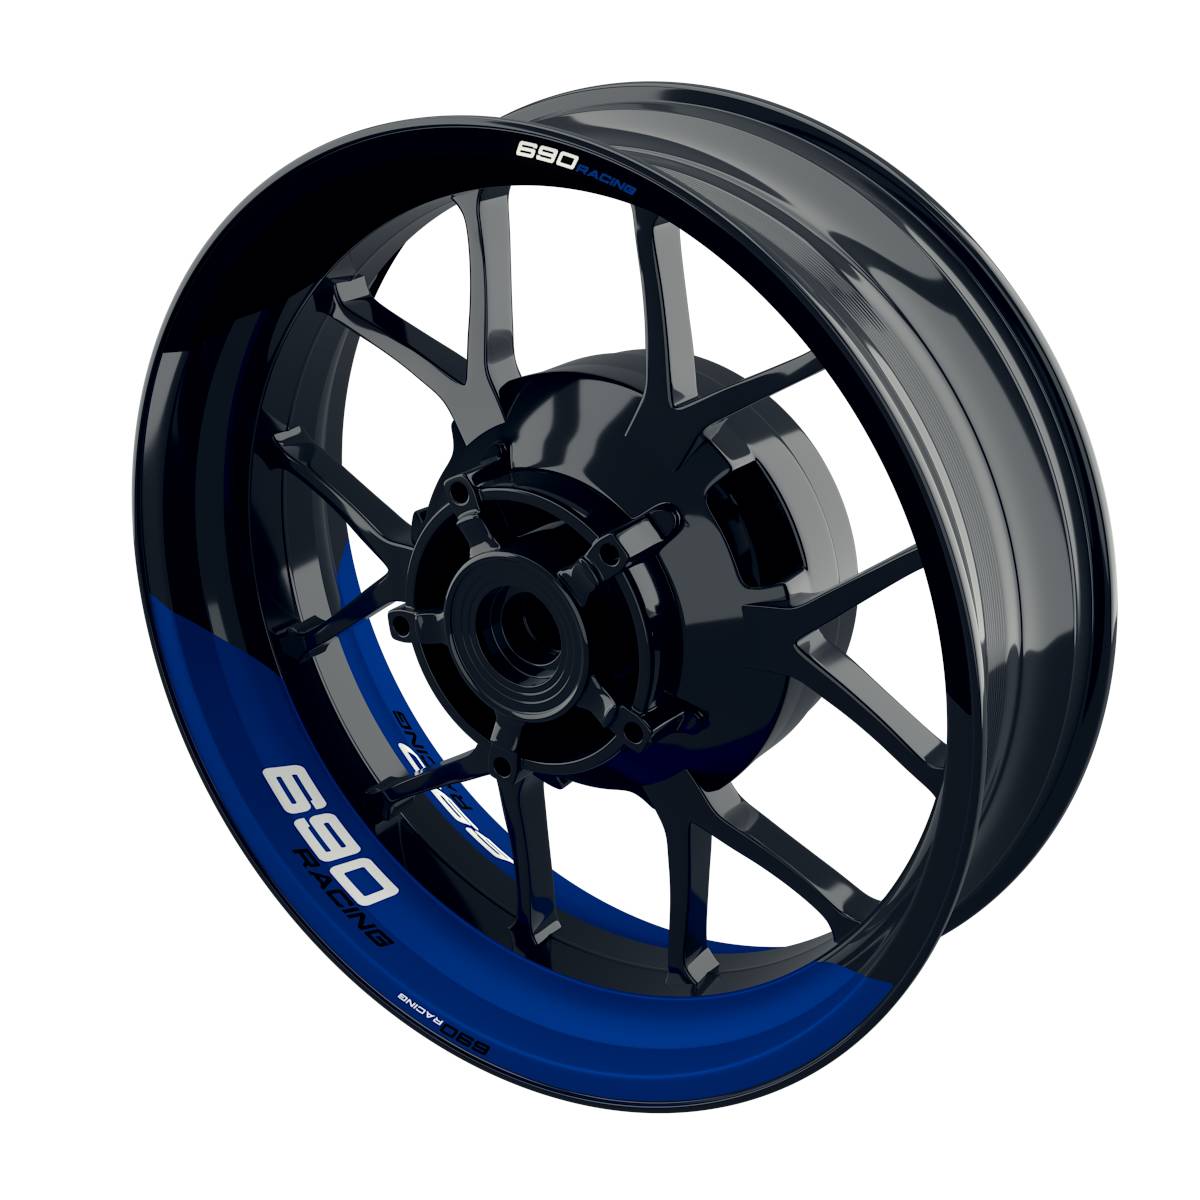 Racing 690 halb halb Rim Decals Wheelsticker Premium splitted